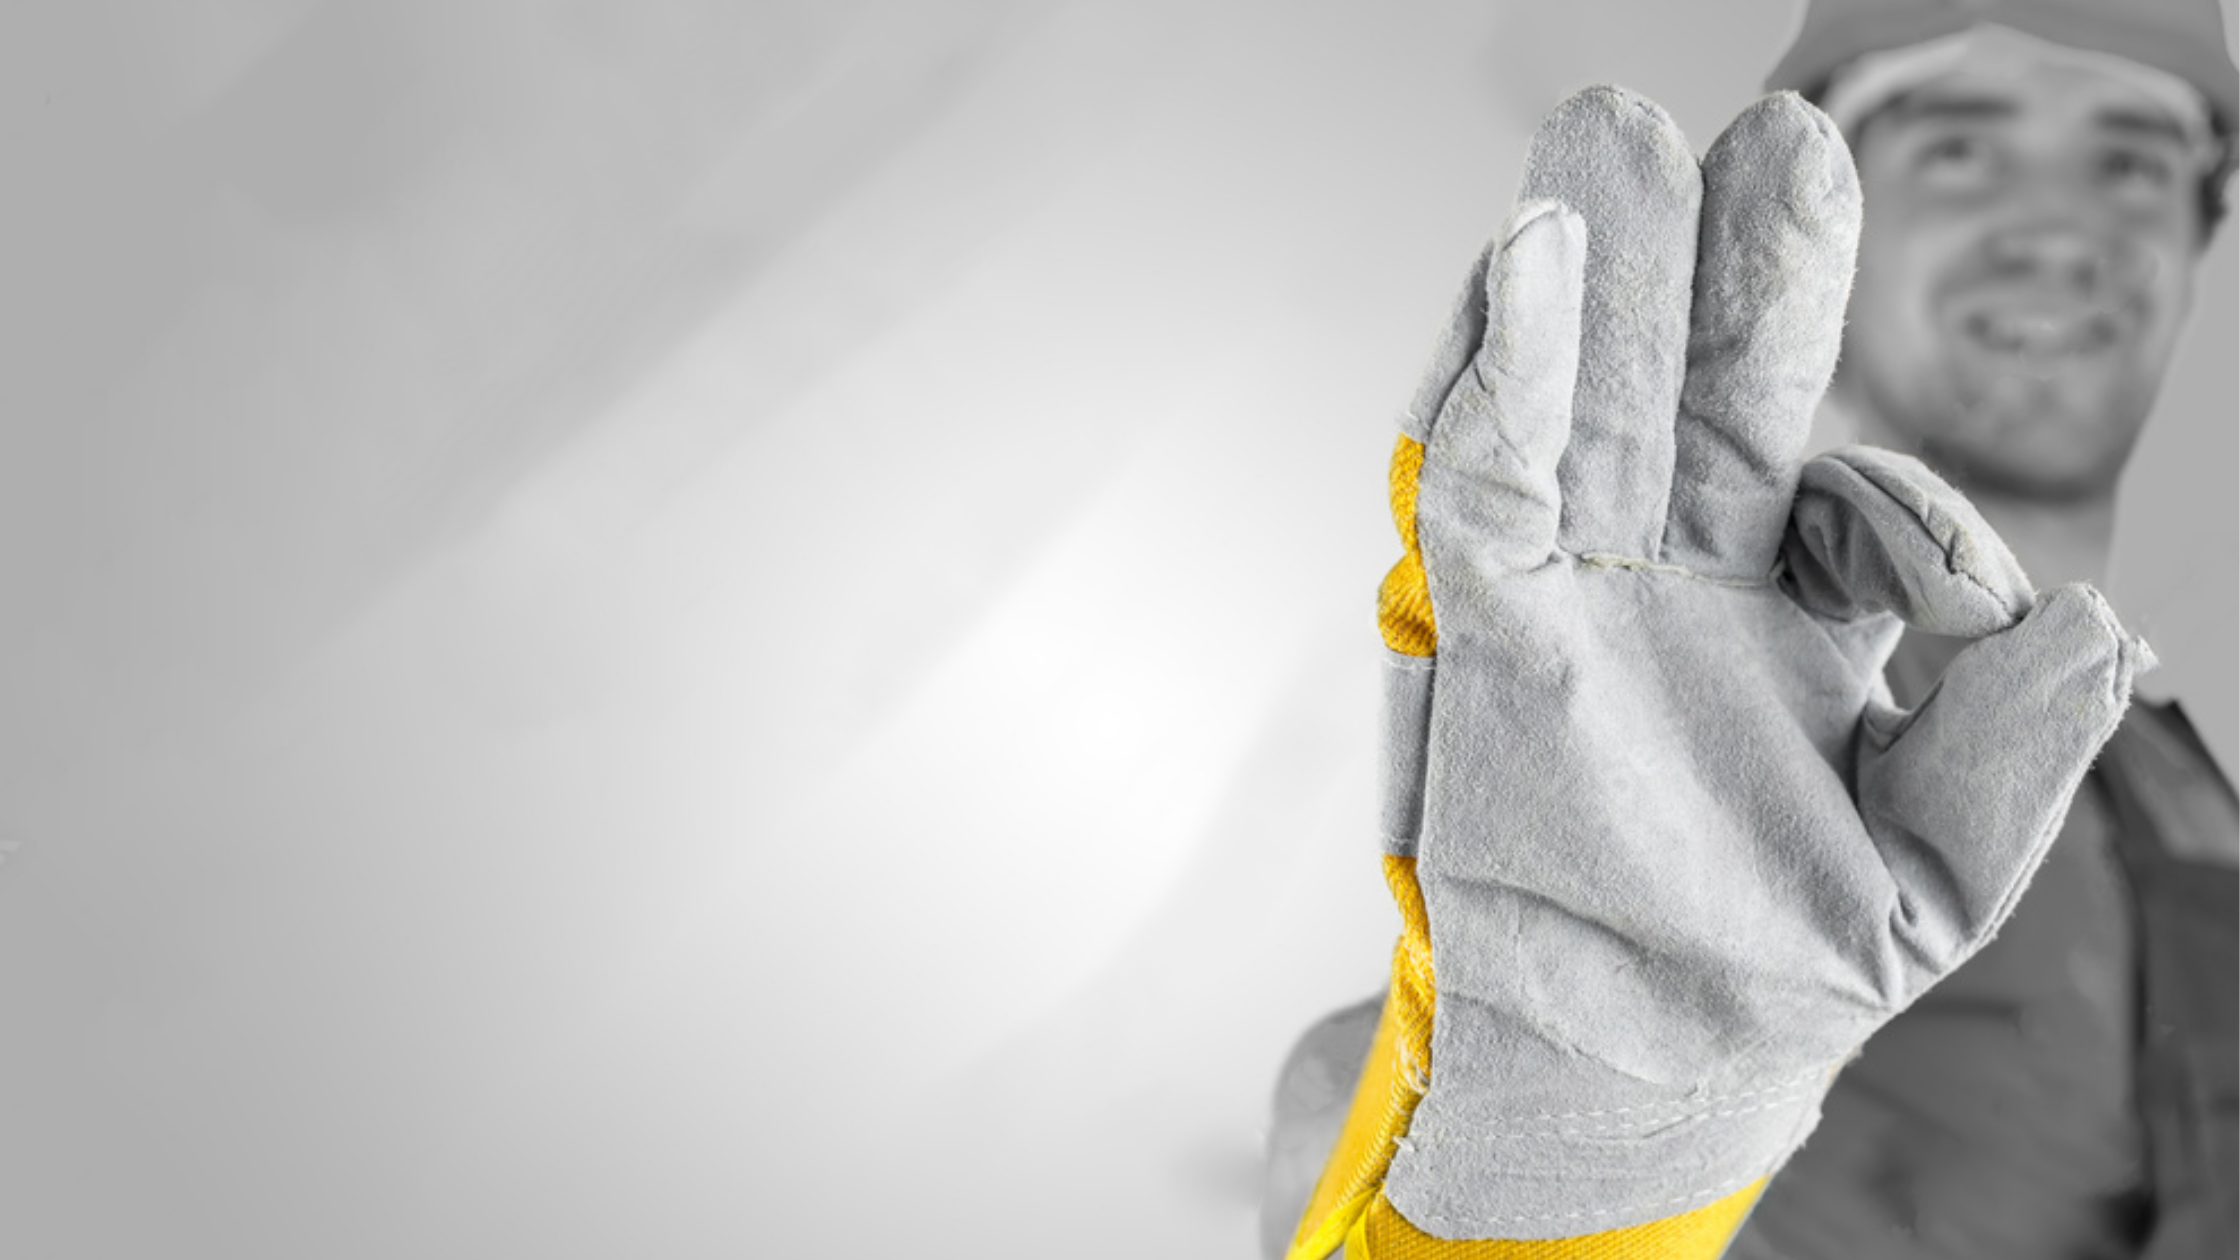 La seguridad de tus empleados: los guantes anticorte